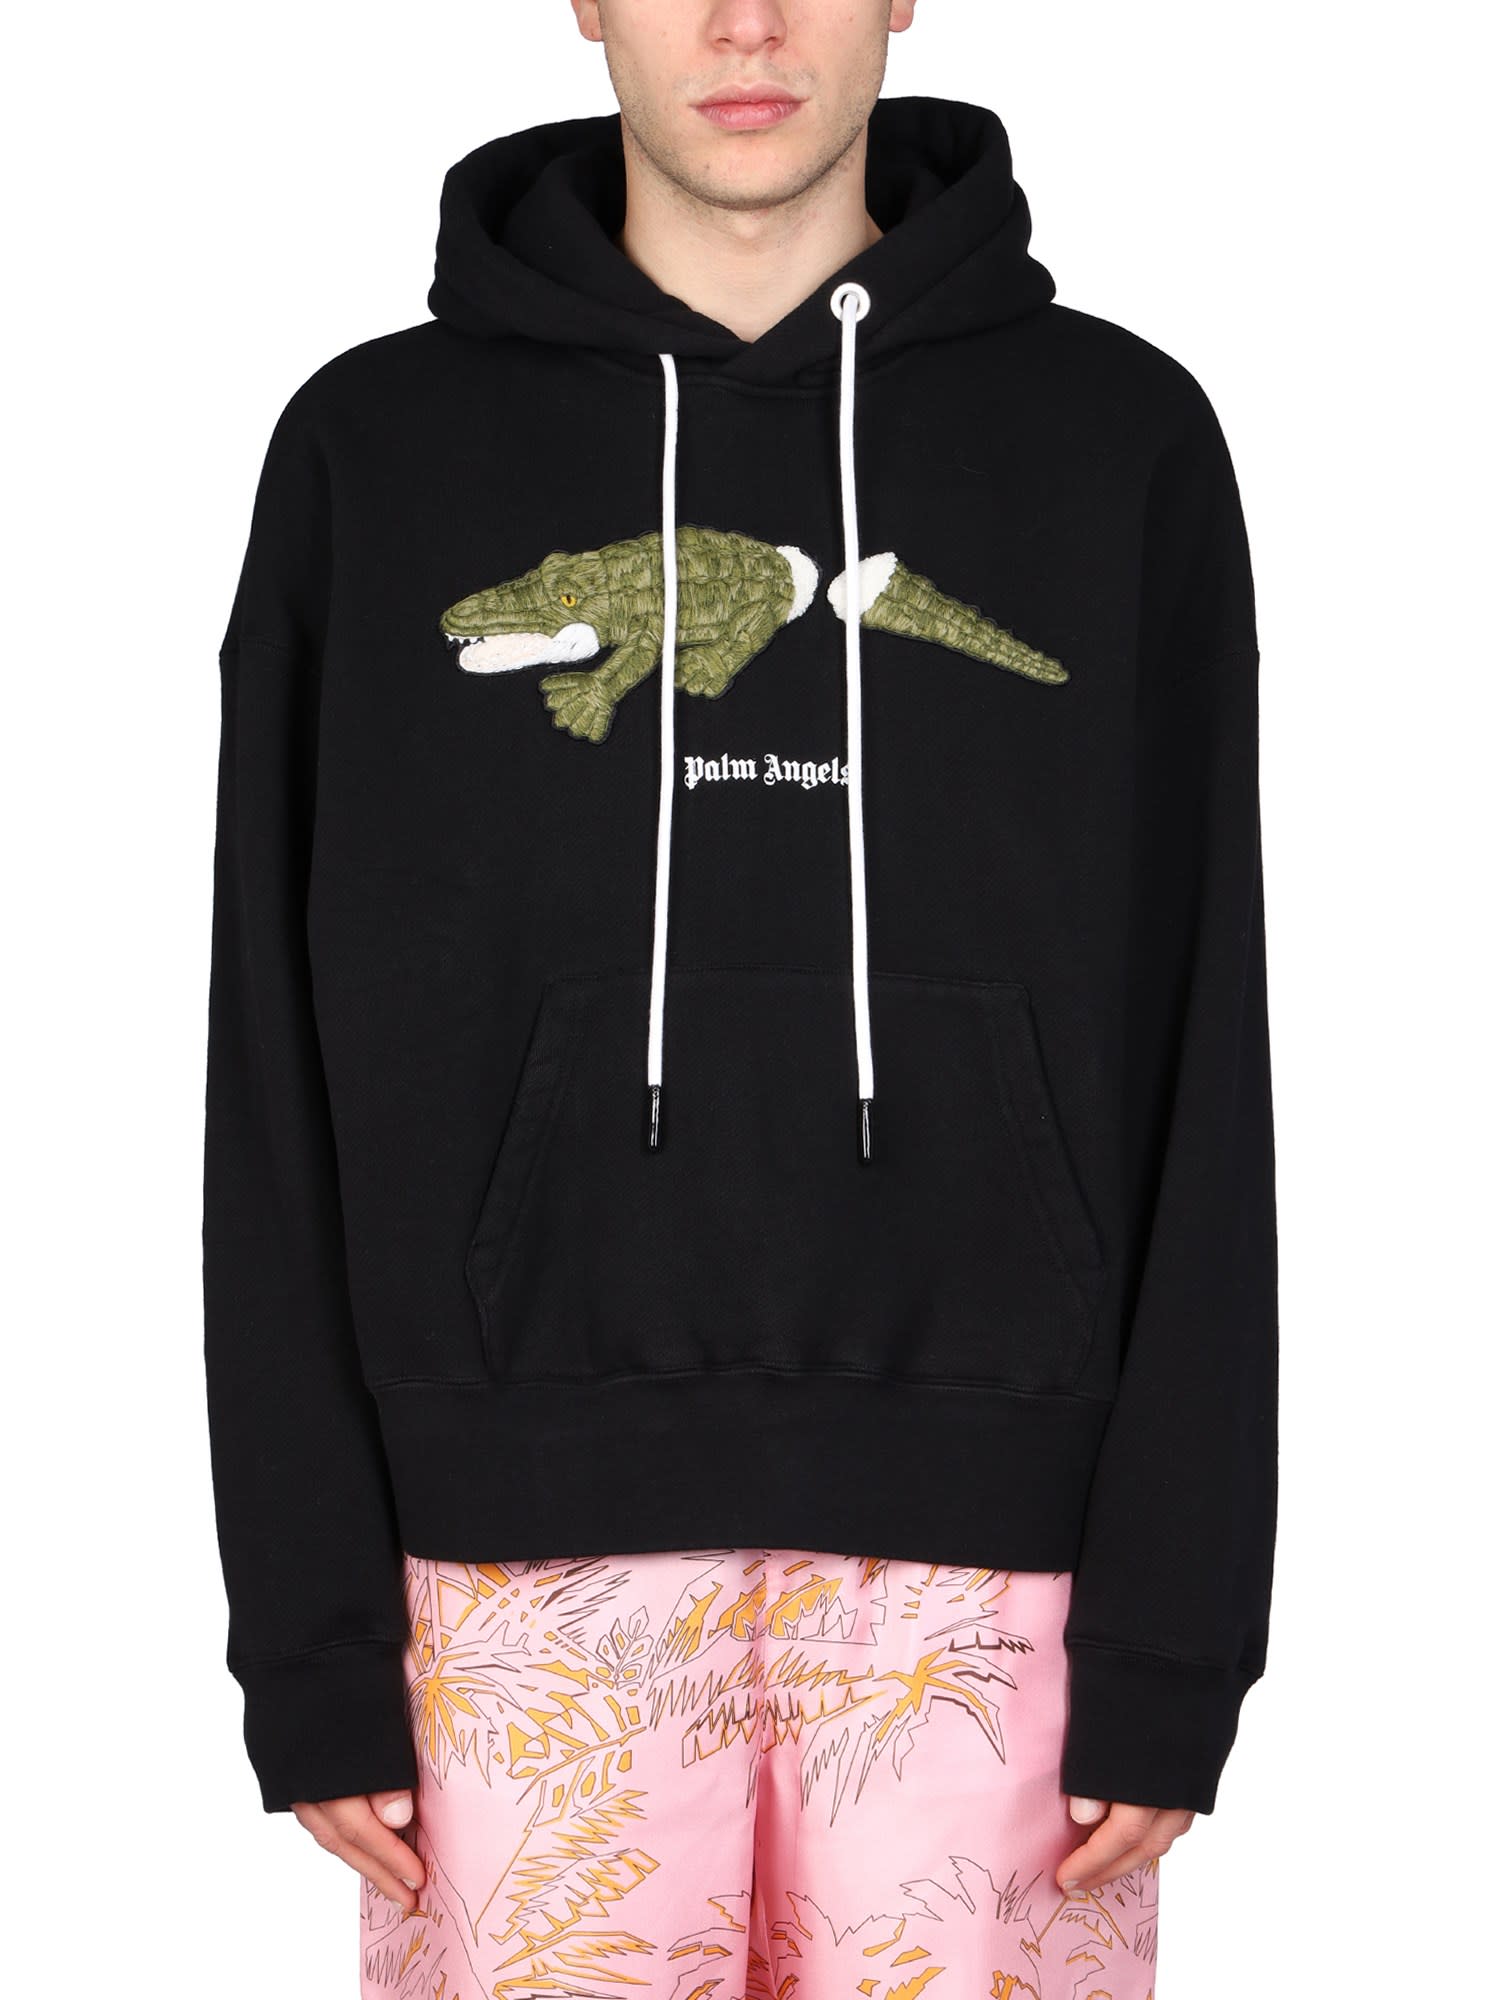 Palm Angels Crocodile Sweatshirt